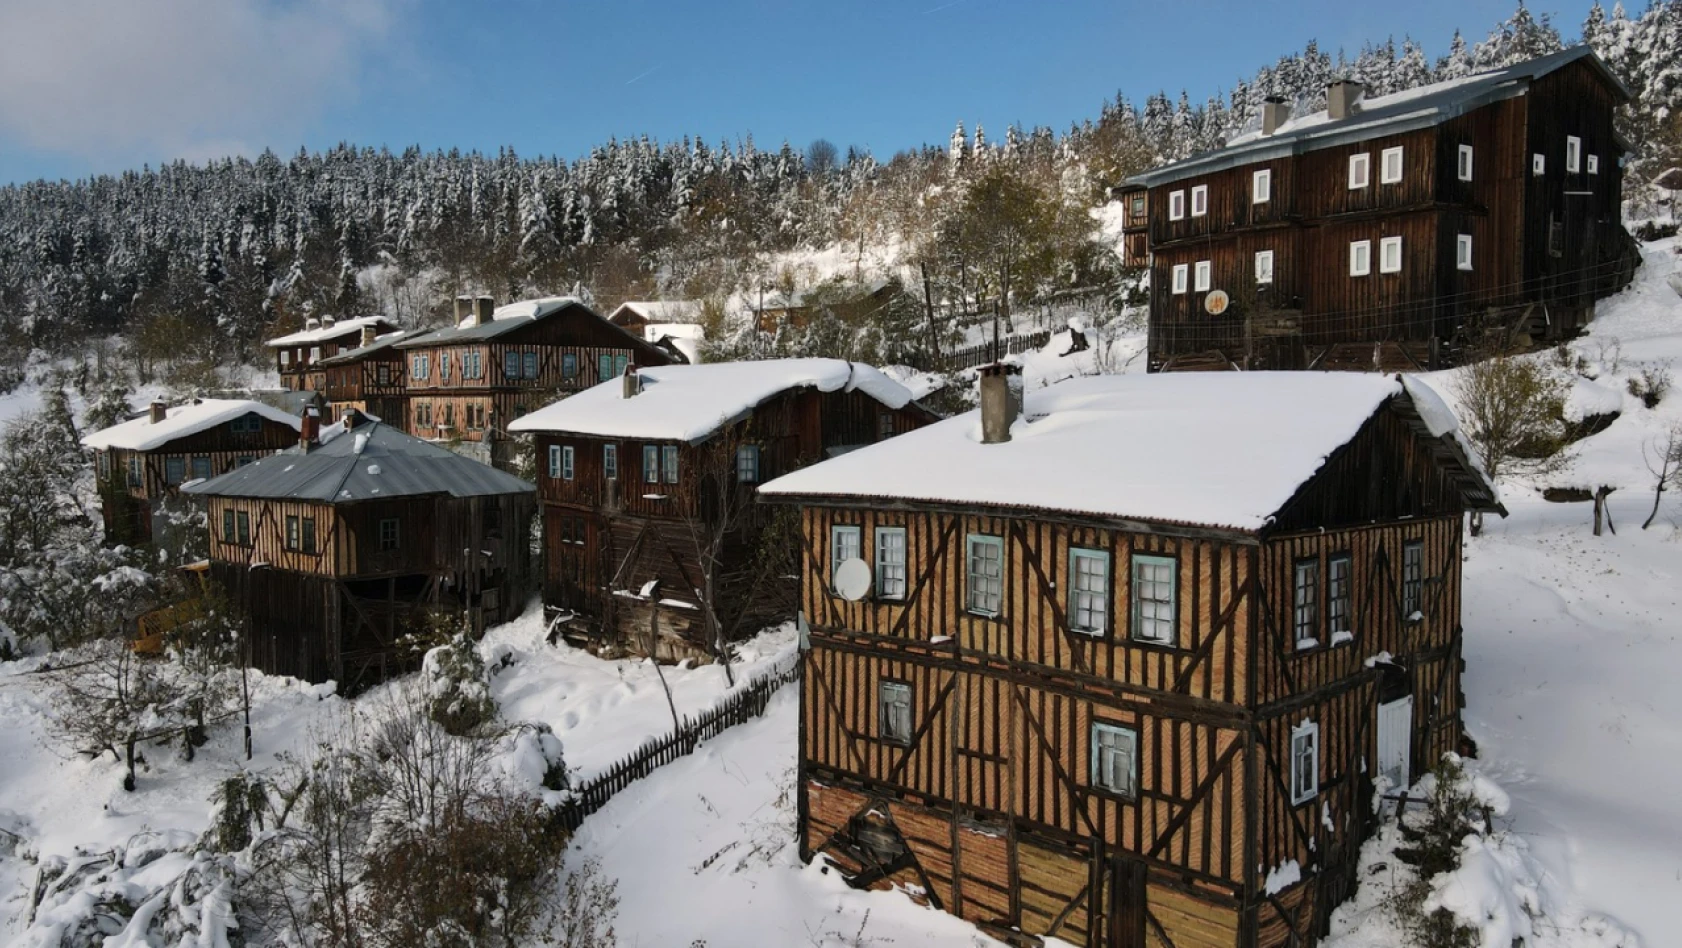 Yöresel evler ve ormanlarla bütünleşen kar